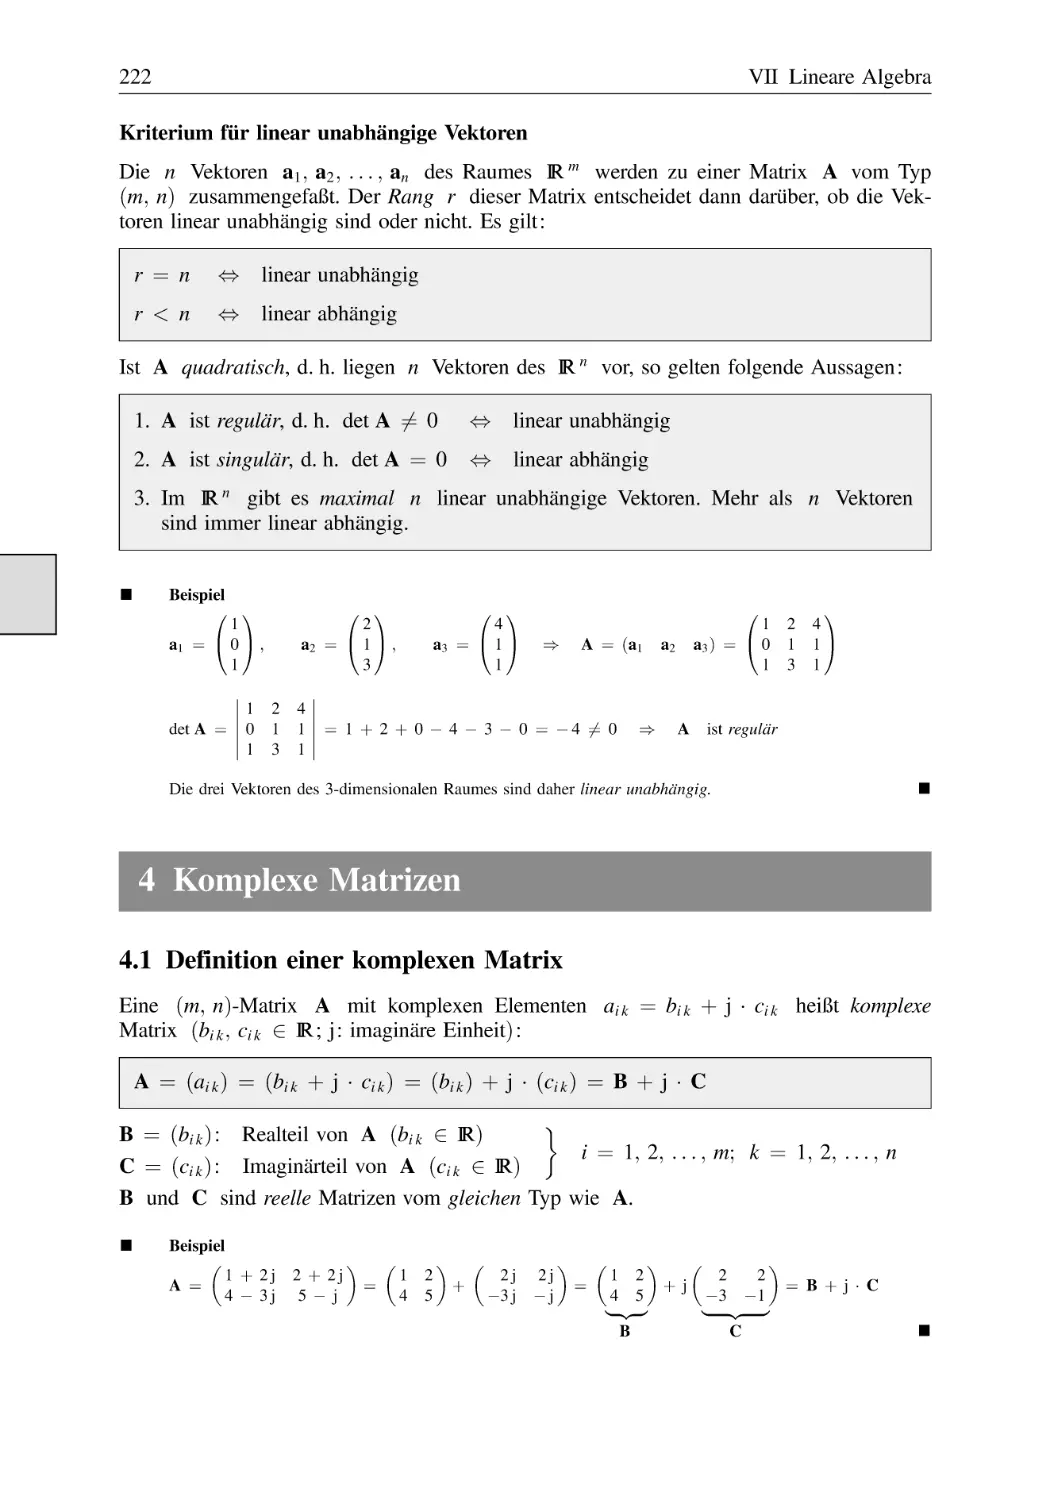 4 Komplexe Matrizen
4.1 Definition einer komplexen Matrix